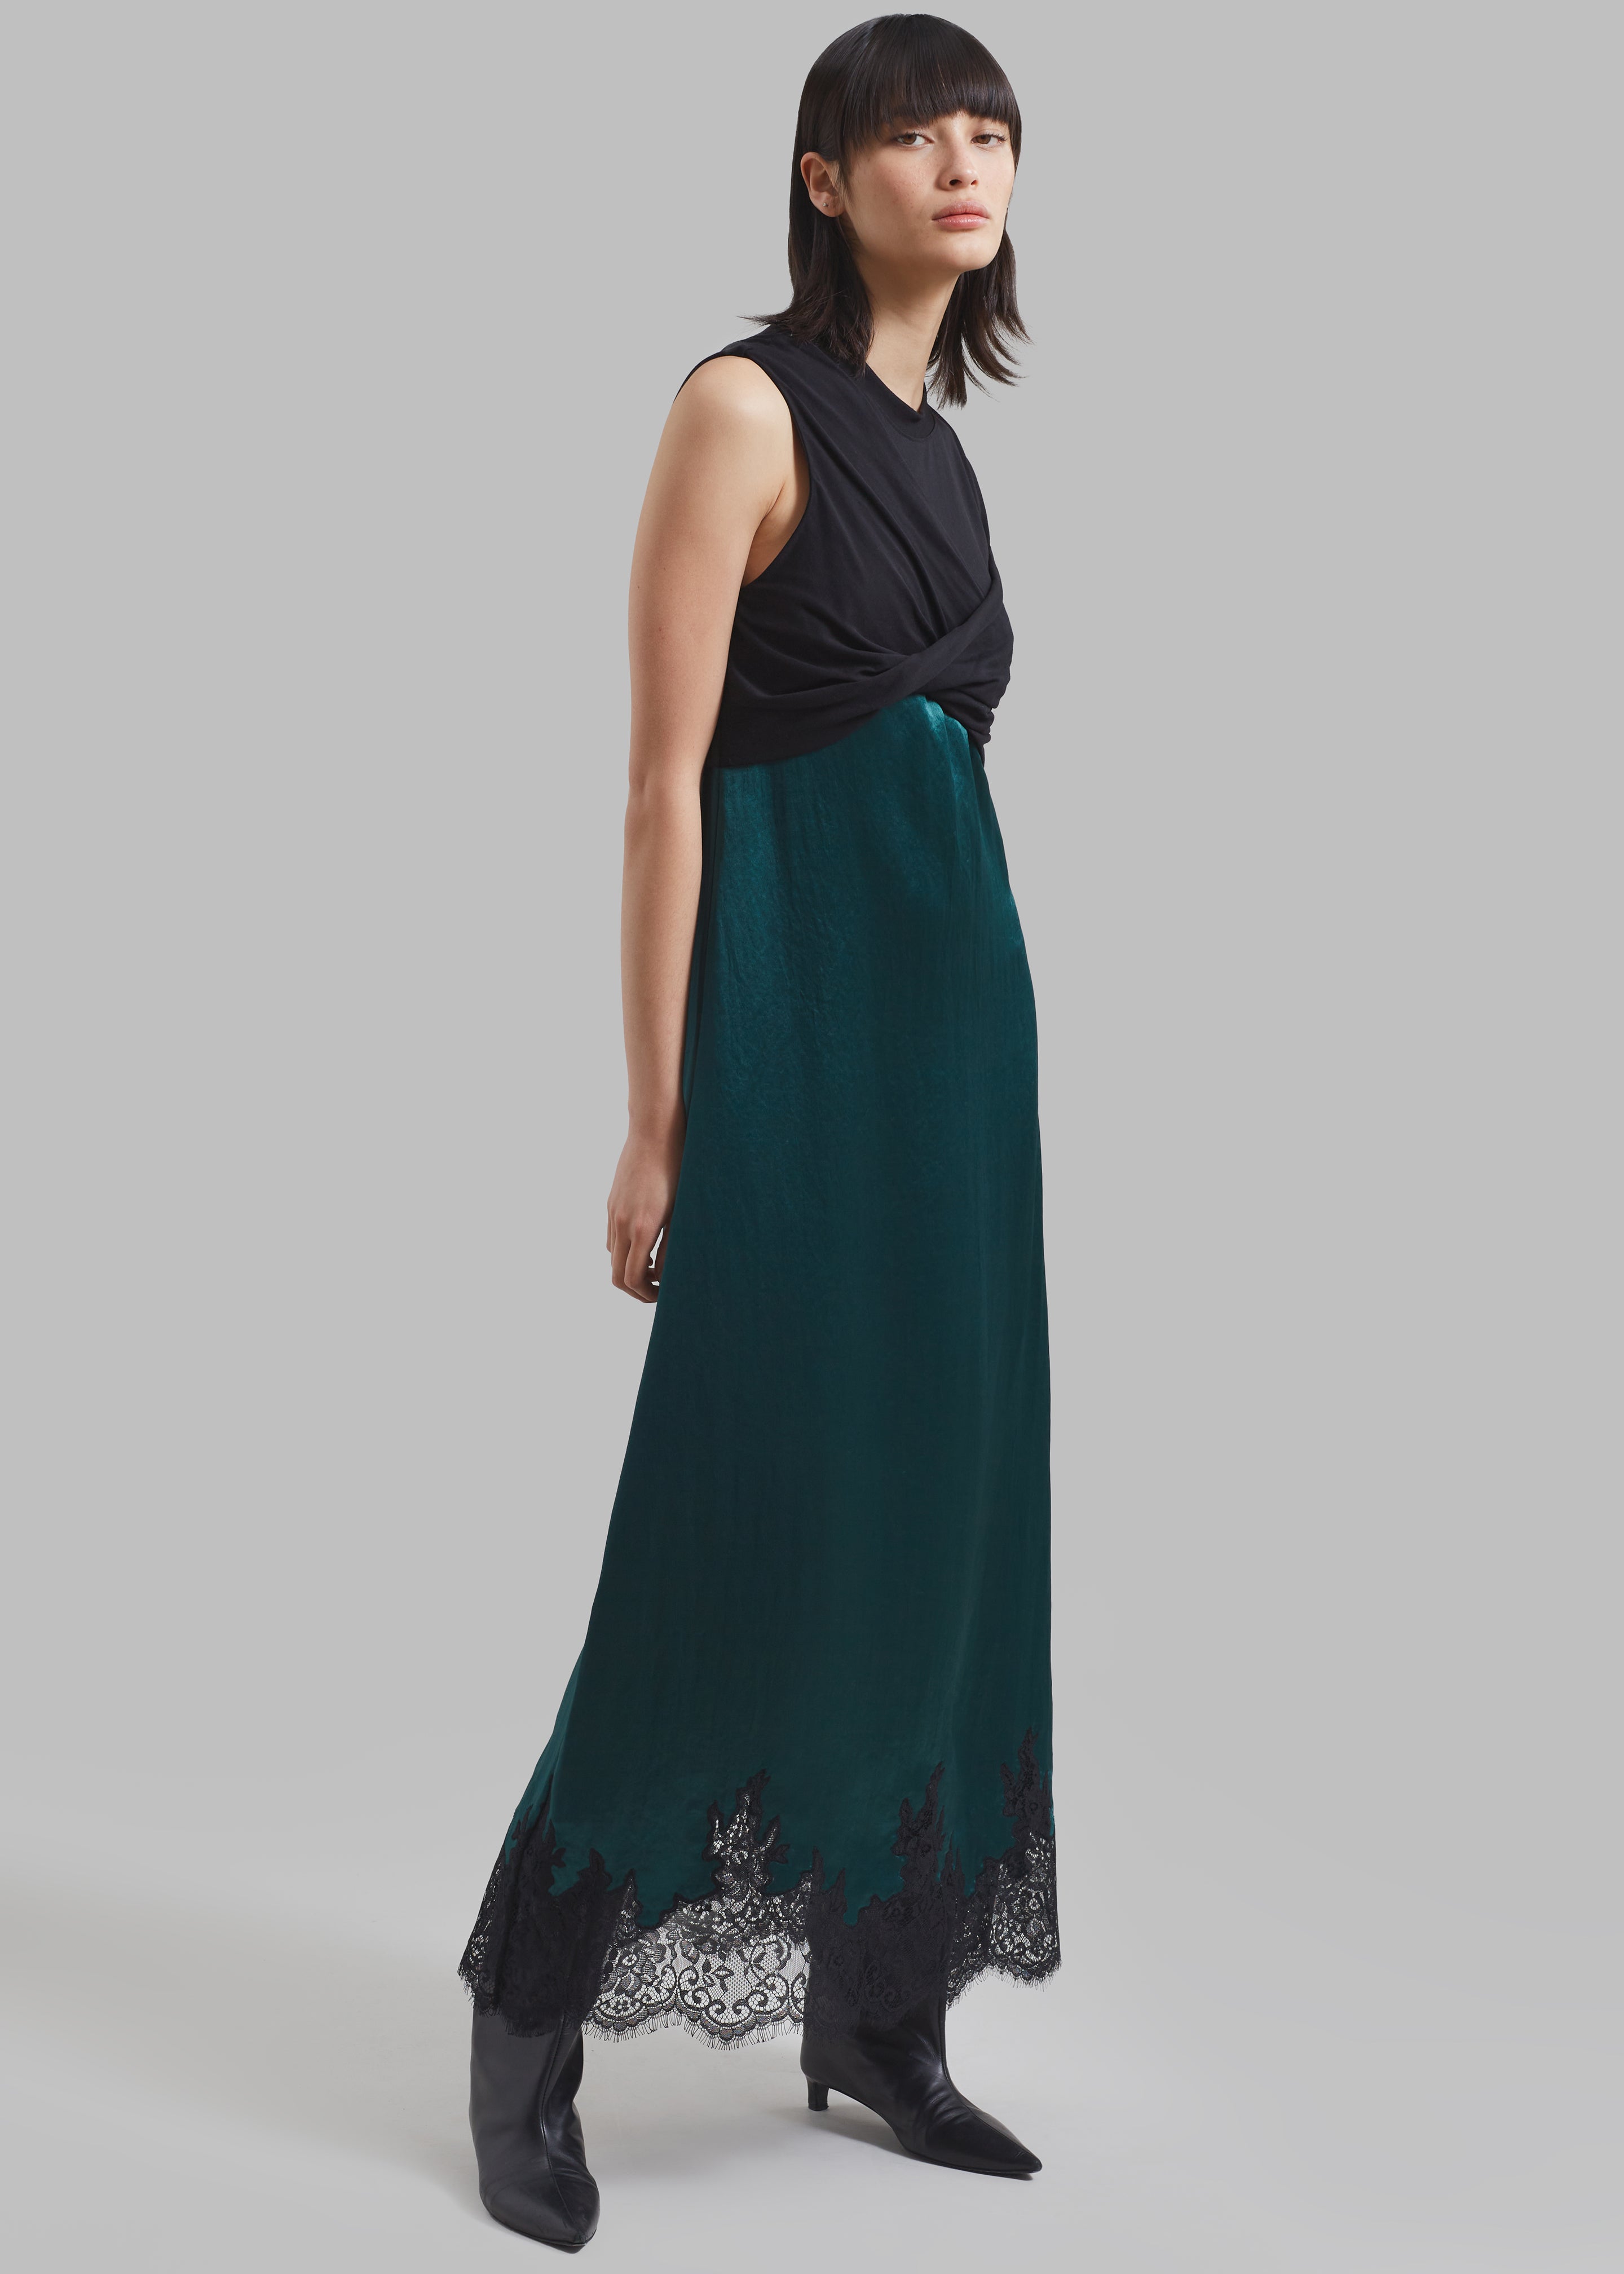 3.1 Phillip Lim Twist Tank Slip Dress - Black/Emerald - 1